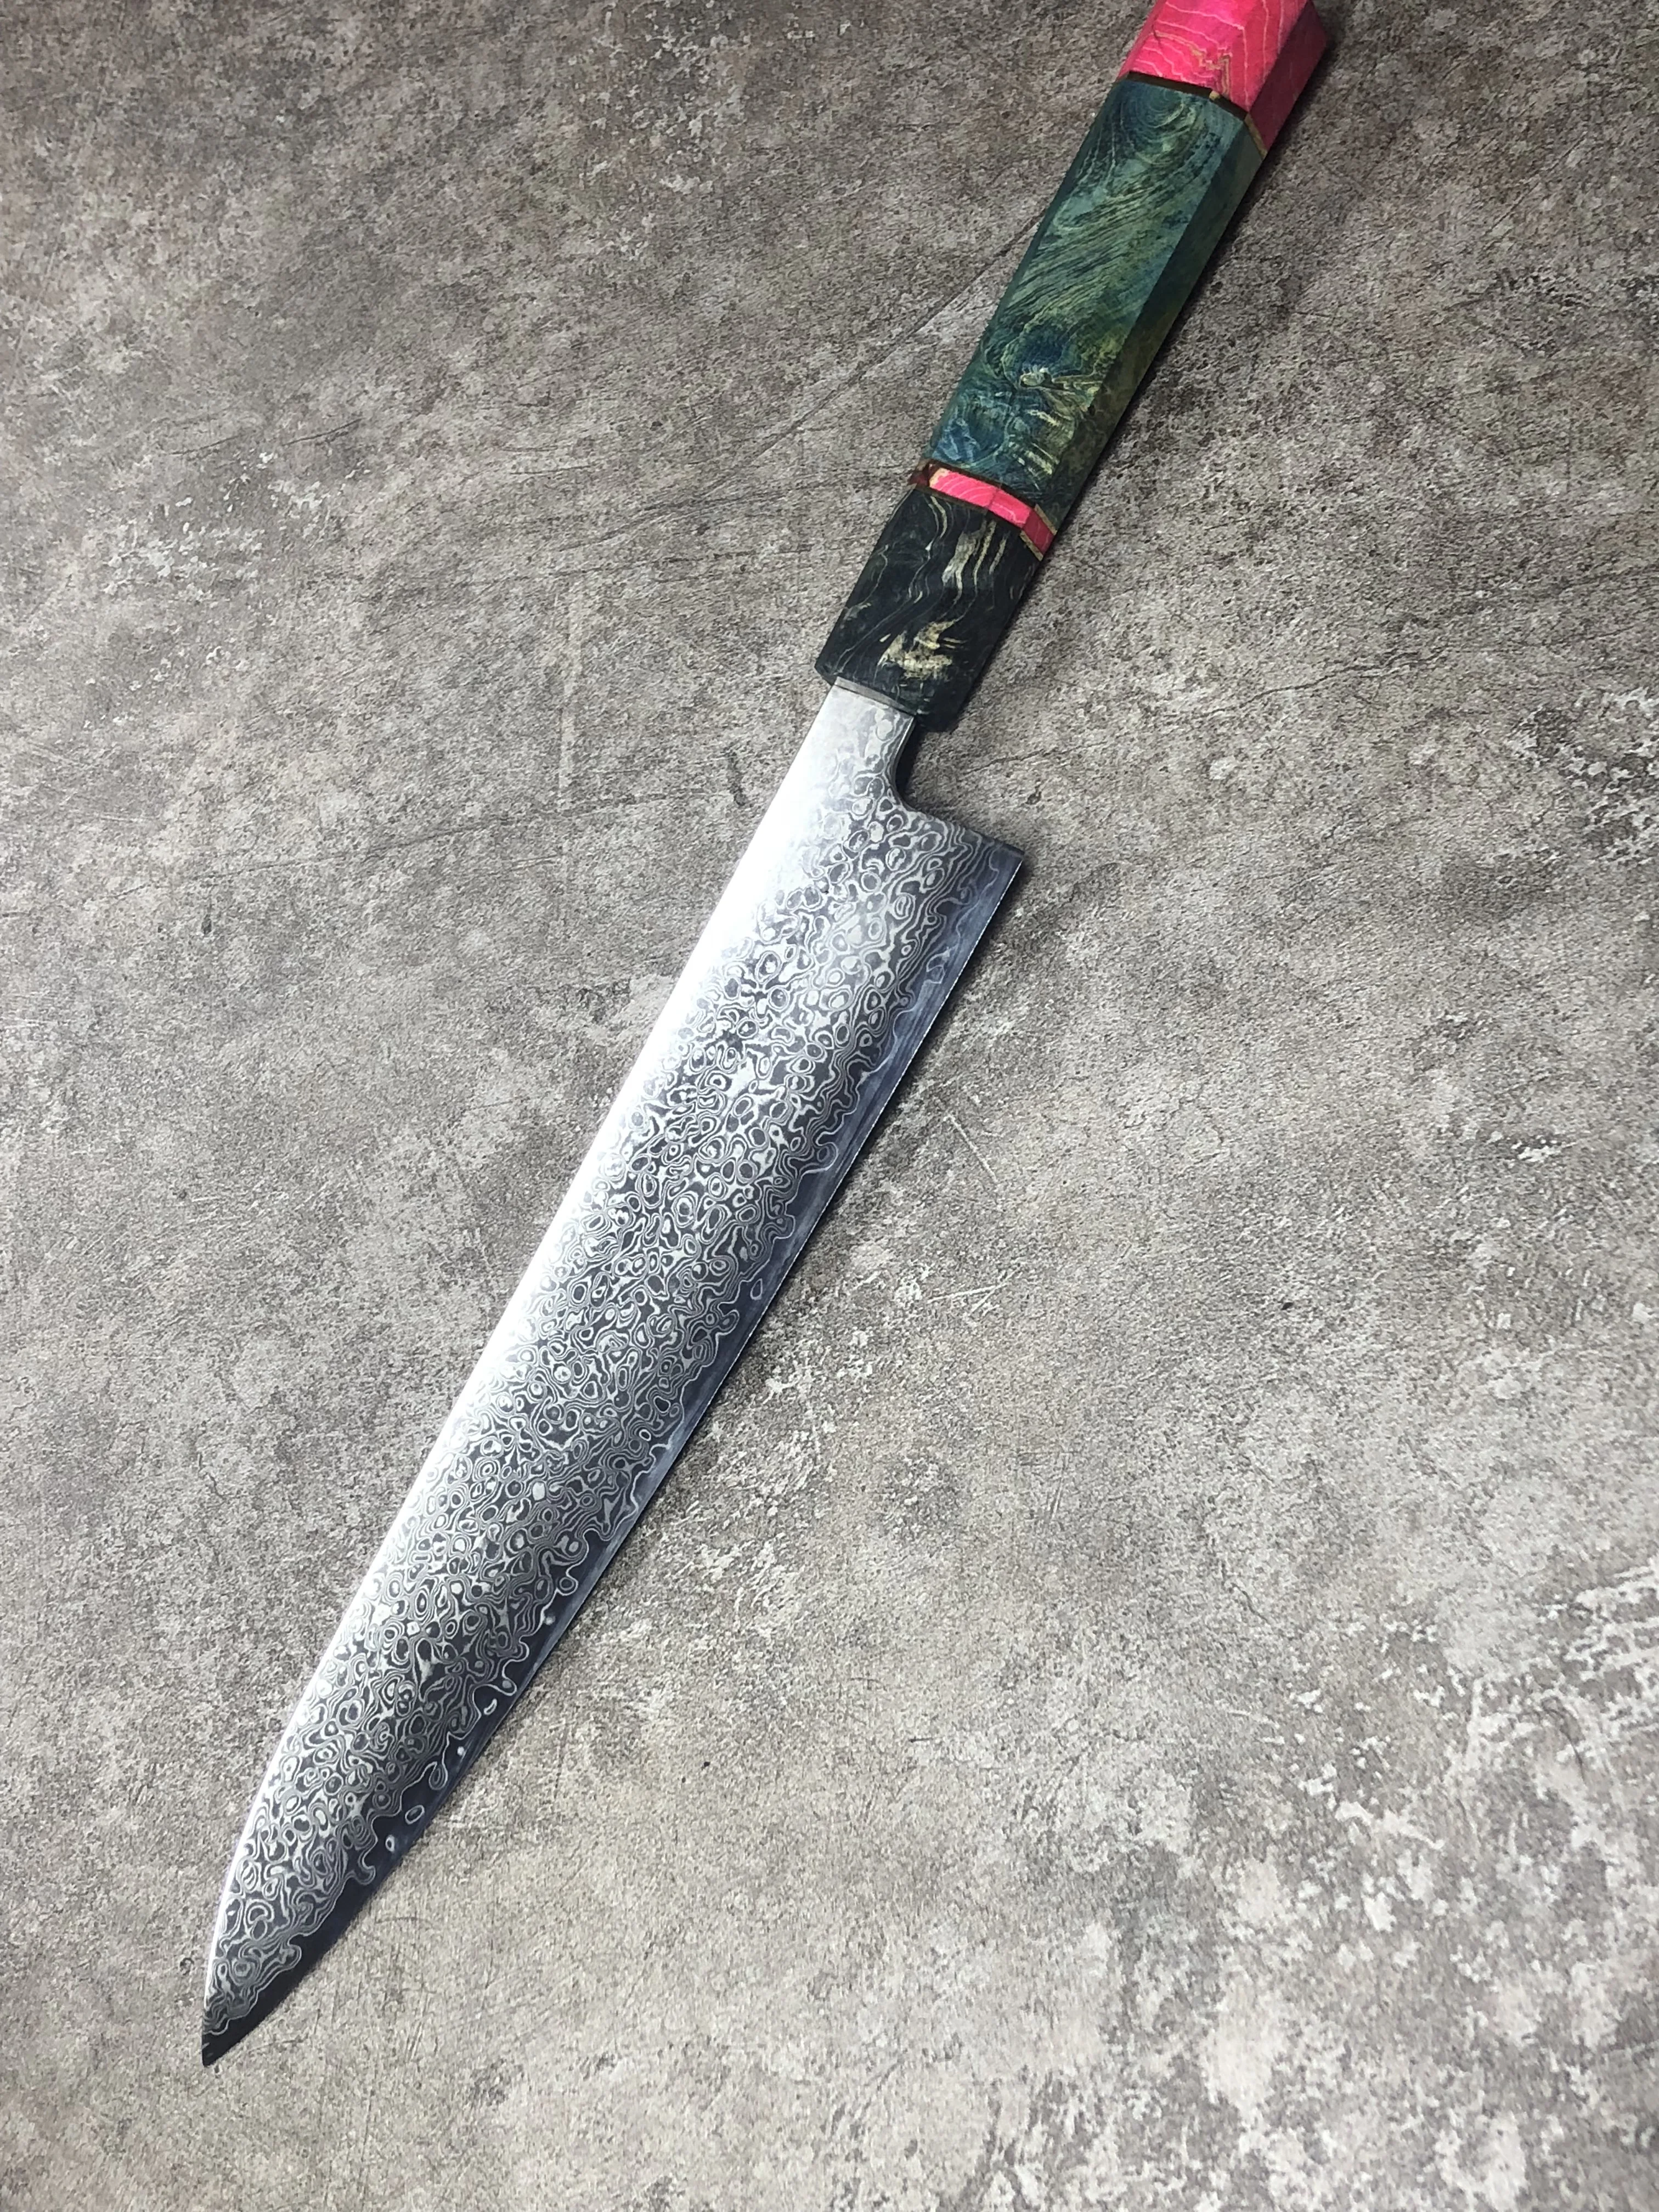 8 ''профессиональный нож шеф -повара Gyuto японский дамасский кухонный нож из нержавеющей стали очень кухонные ножи с деревянной ручкой от AliExpress RU&CIS NEW